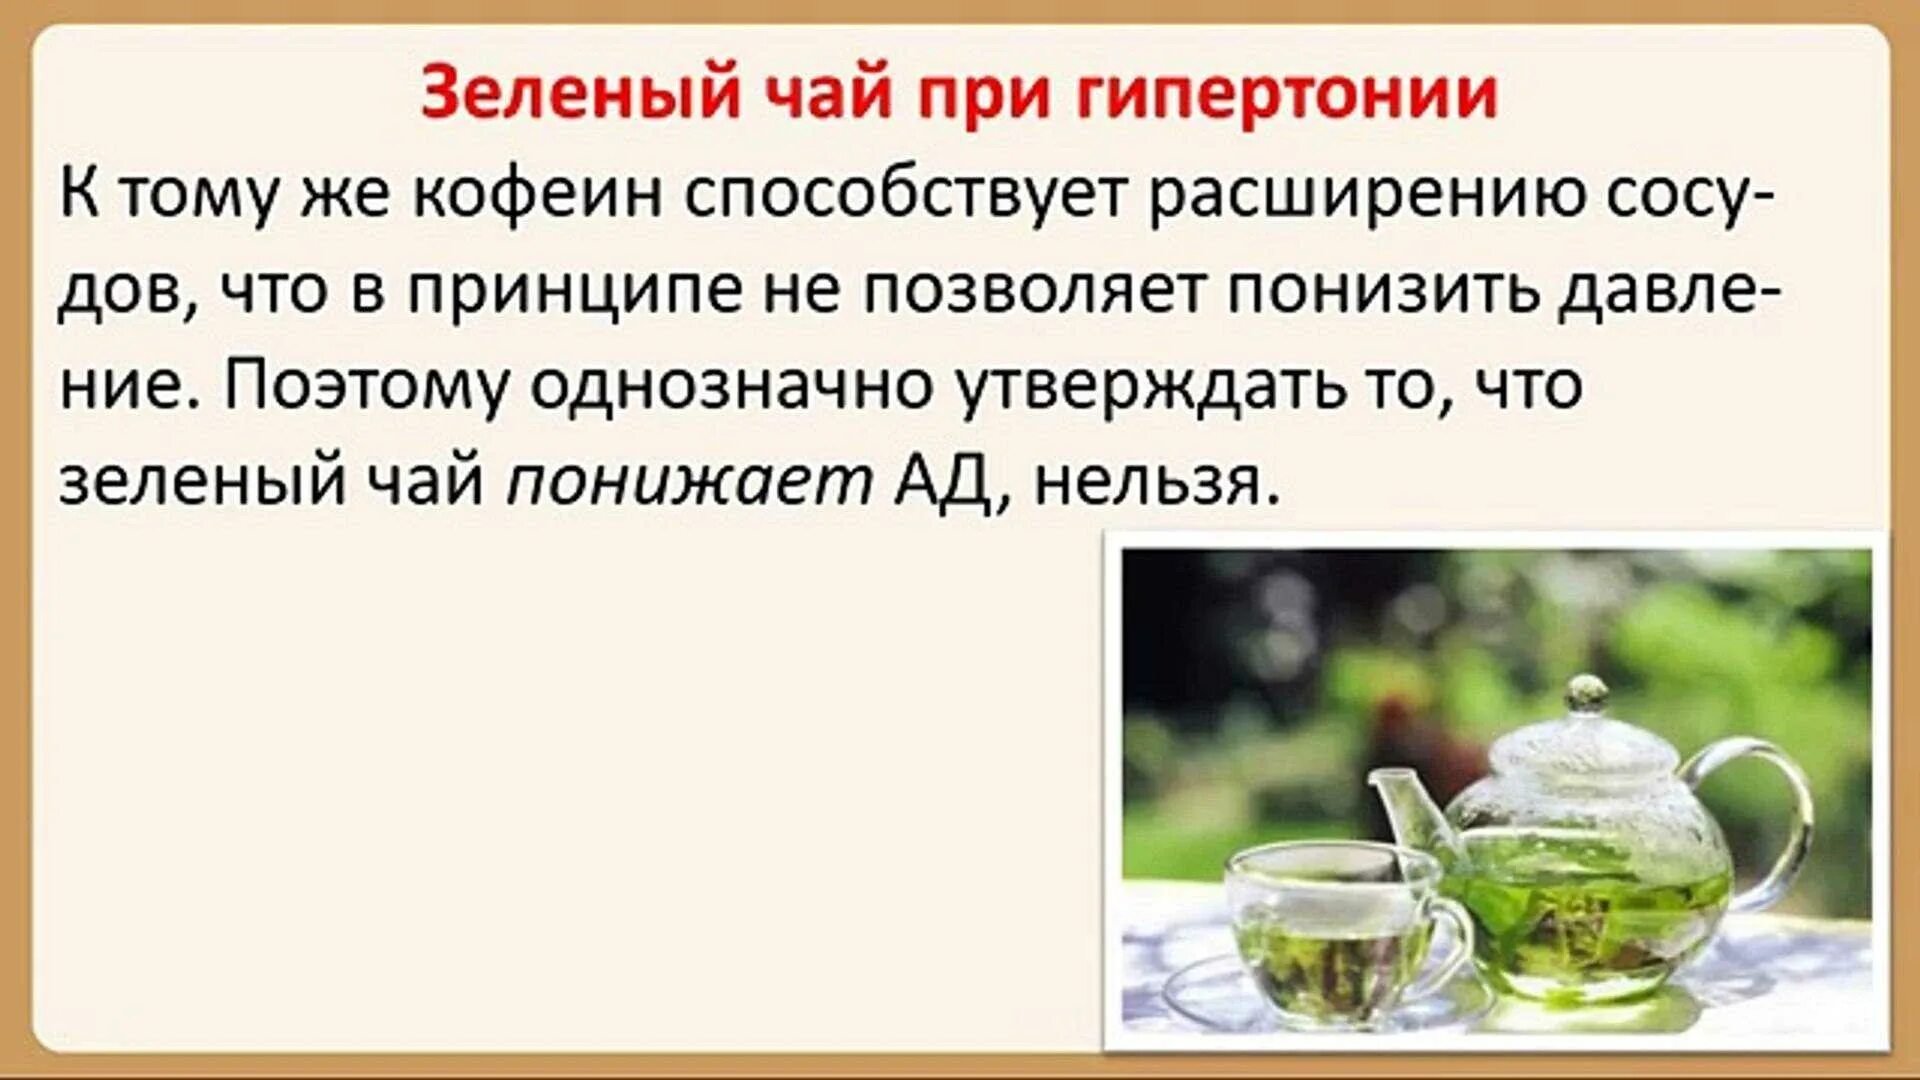 Чай поднимает. Зеленый чай понижает давление. Зелёный чай от давления высокого. Чай при гипертонии. Зеленый чай при гипертонии.